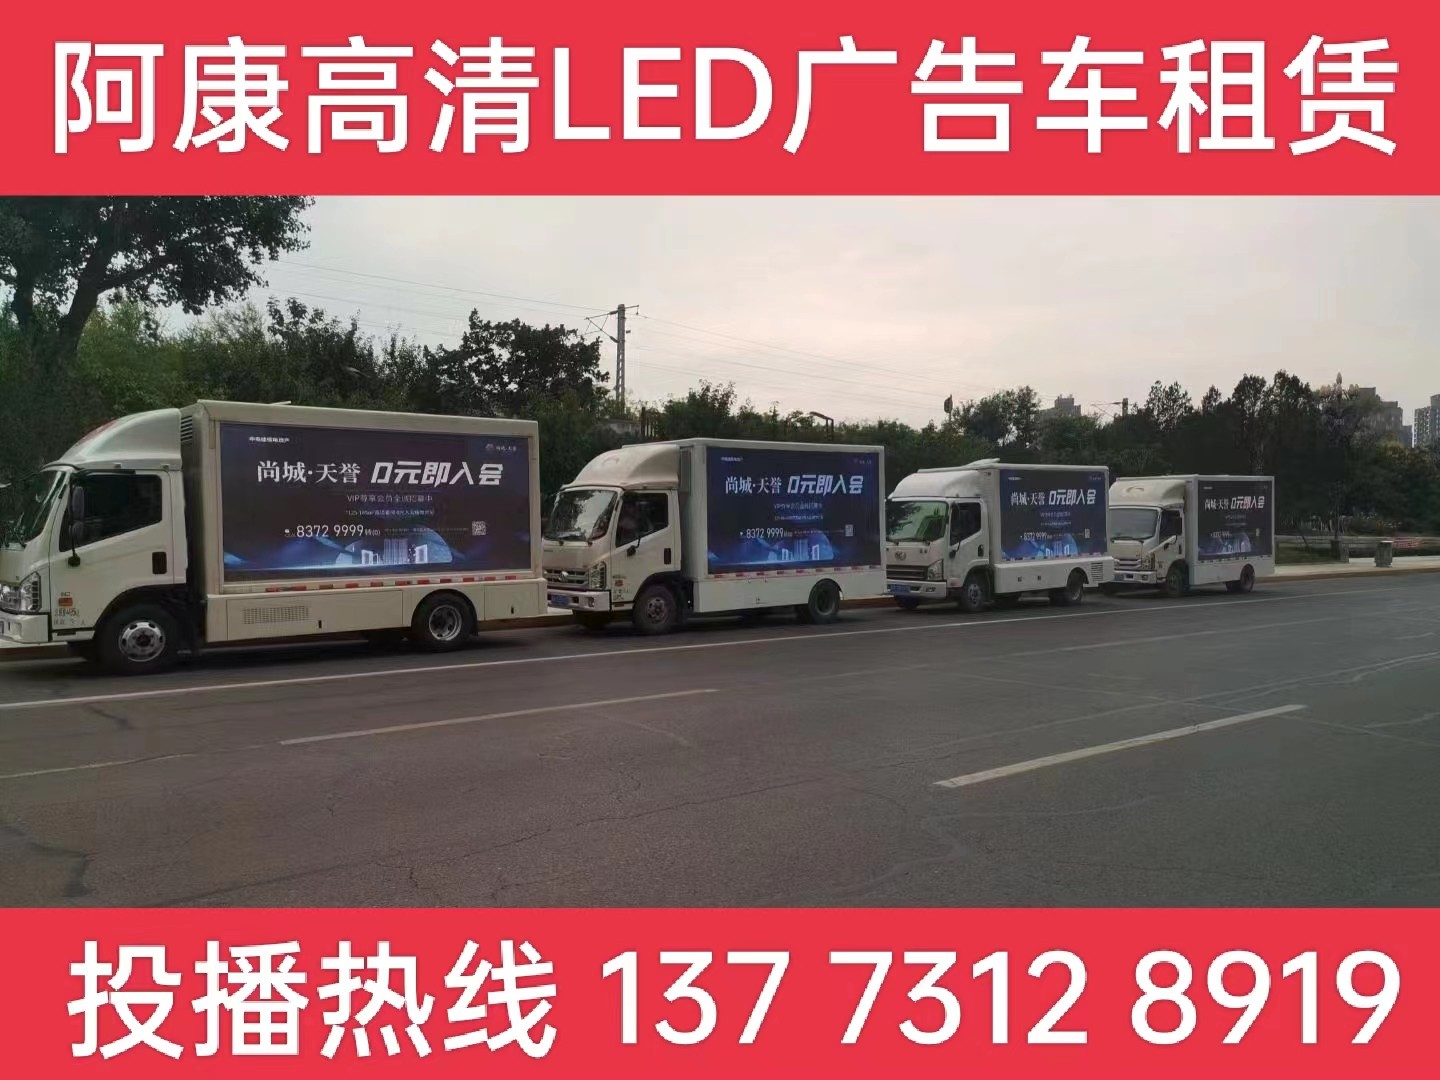 芜湖LED广告车出租-某房产公司效果展示